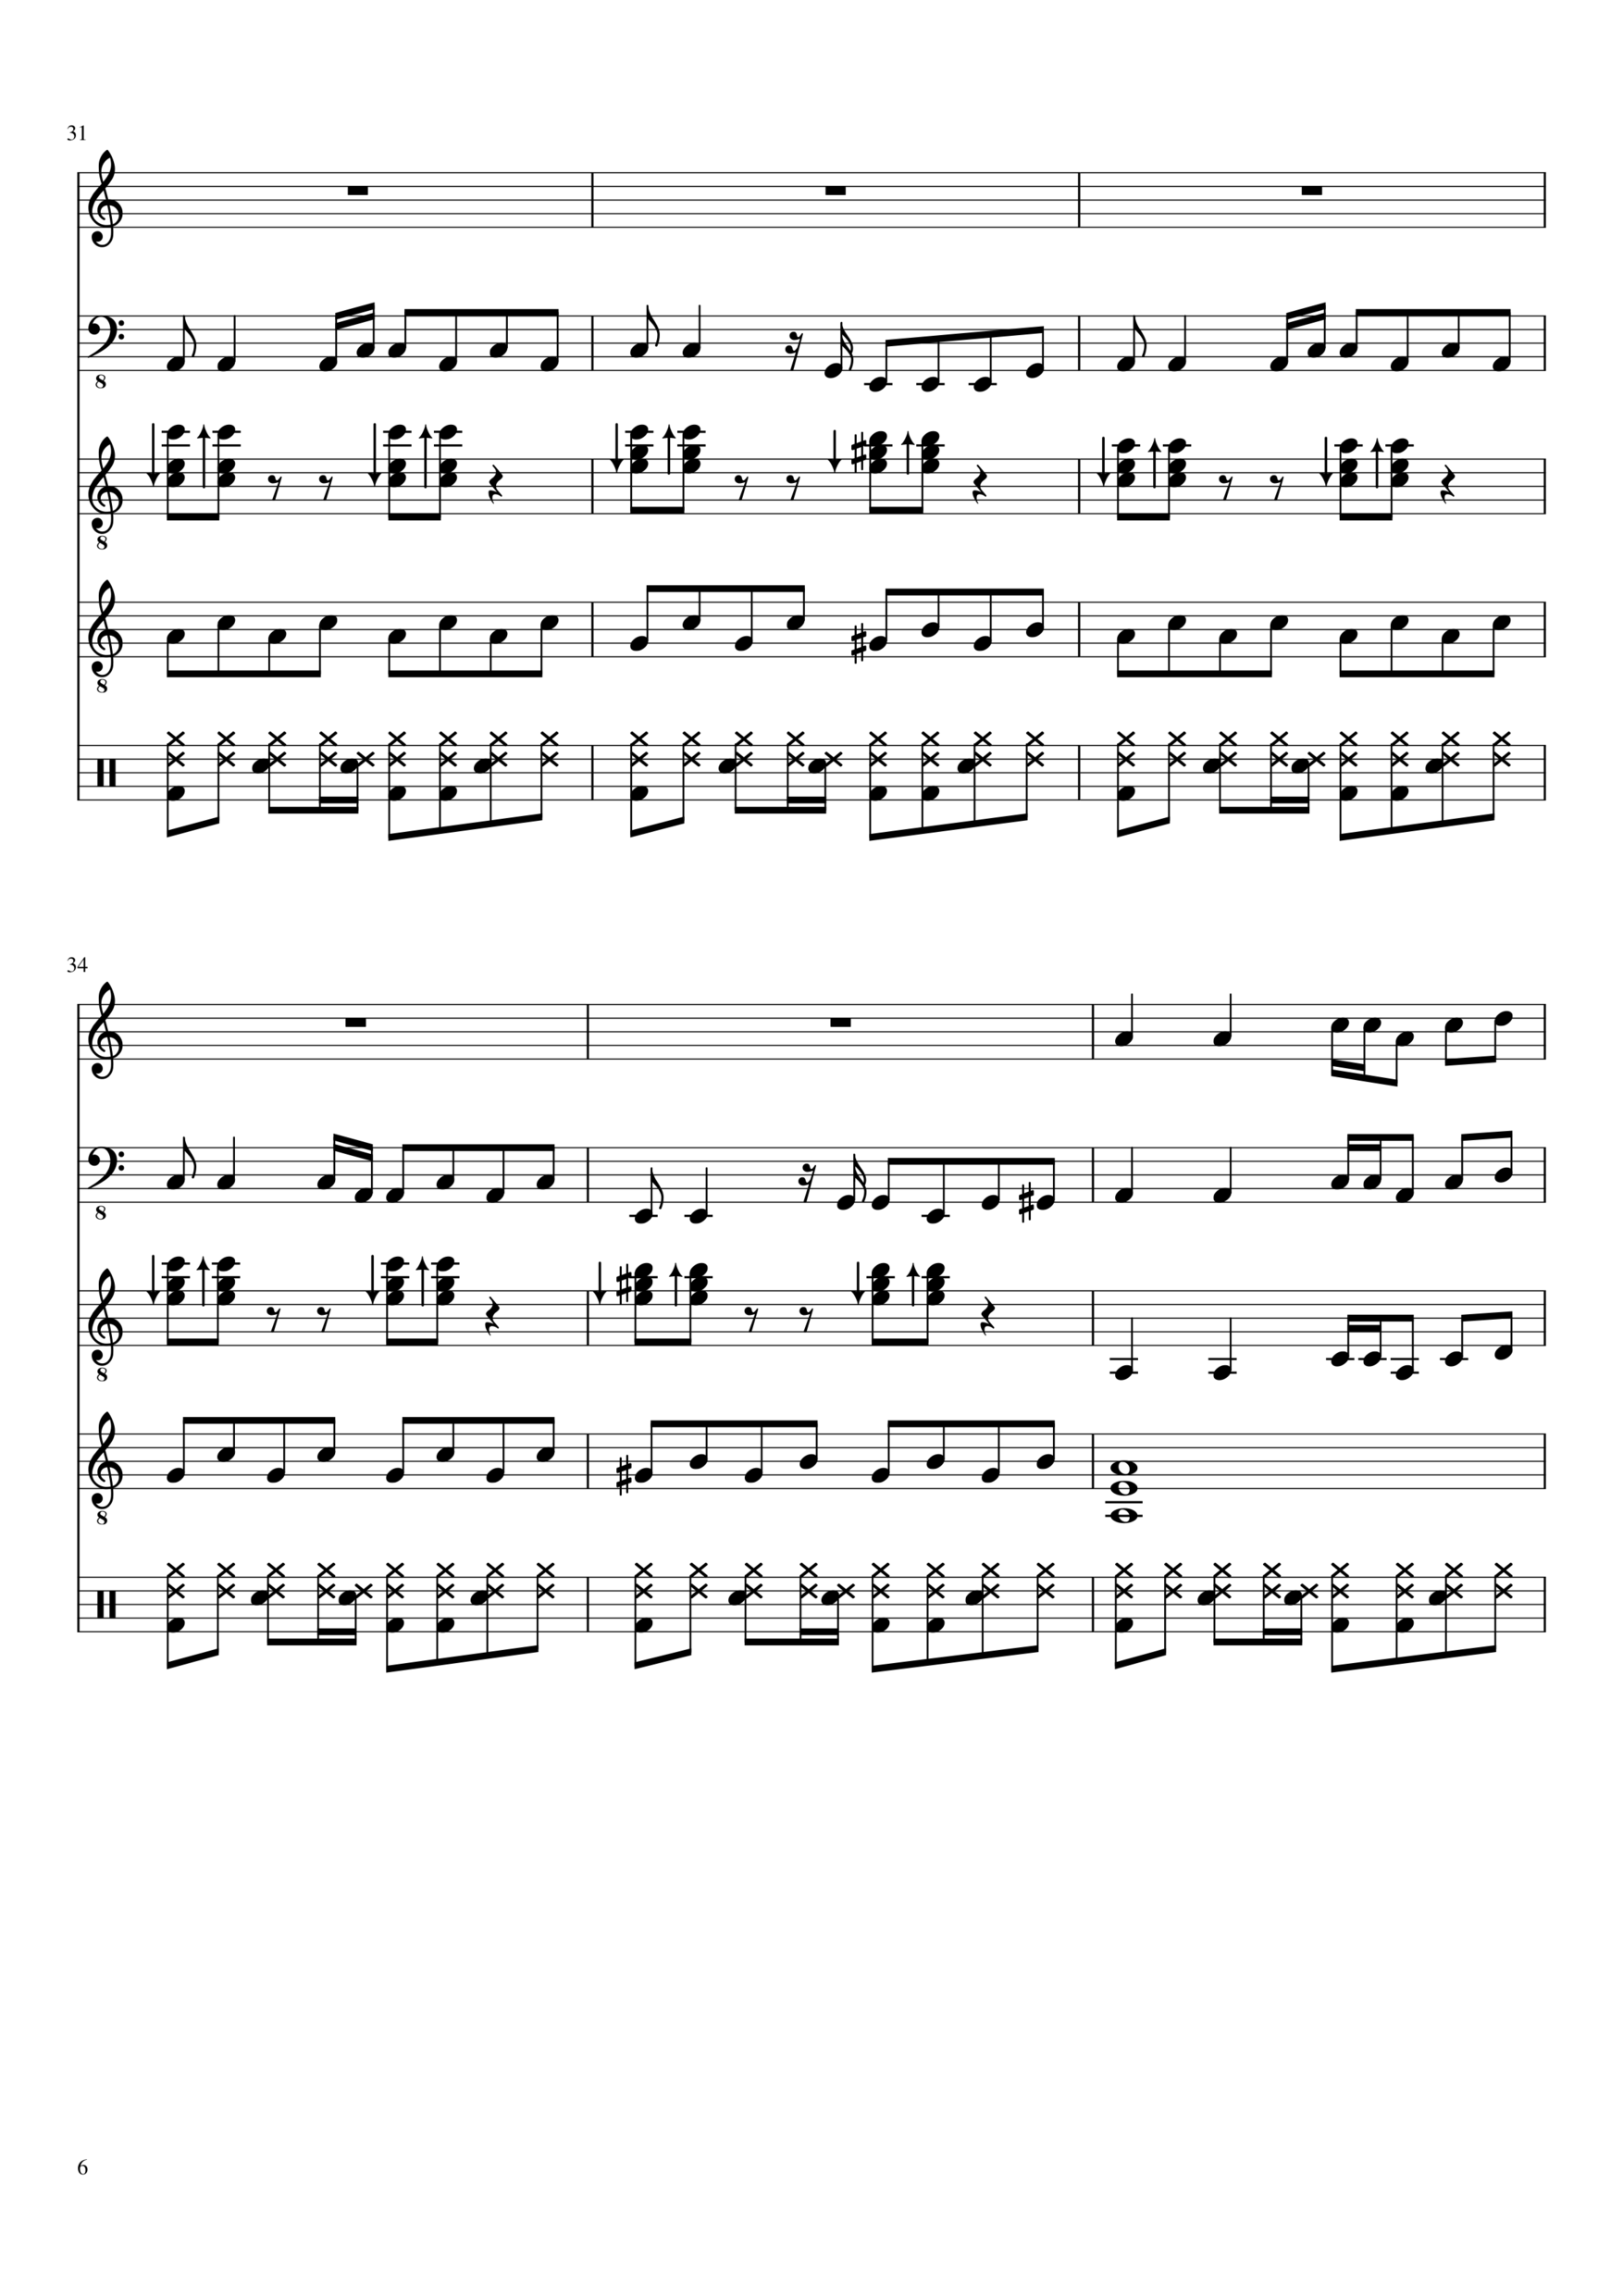 Vechnaya lyubov slide, Image 6